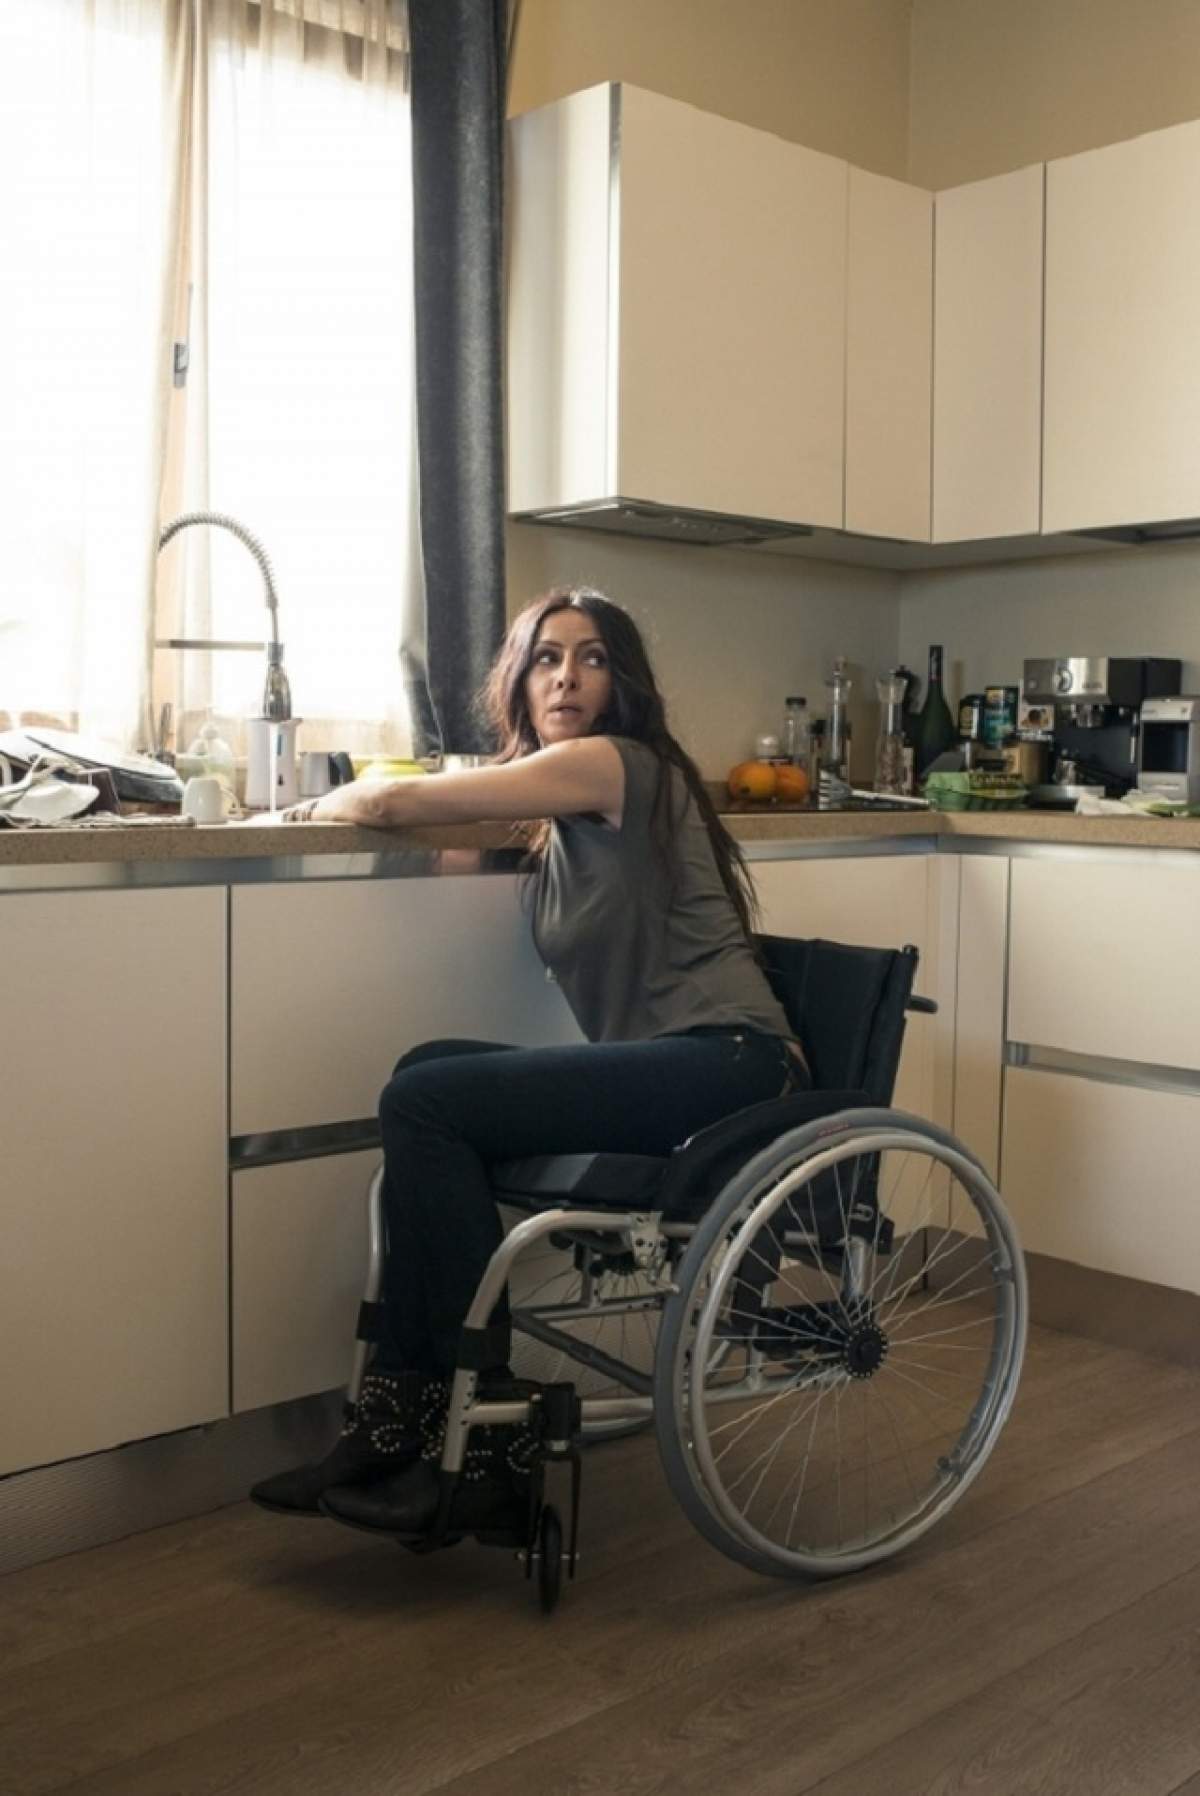 Imagini şocante! Mihaela Rădulescu a ajuns în scaun cu rotile! Vezi ce s-a întâmplat